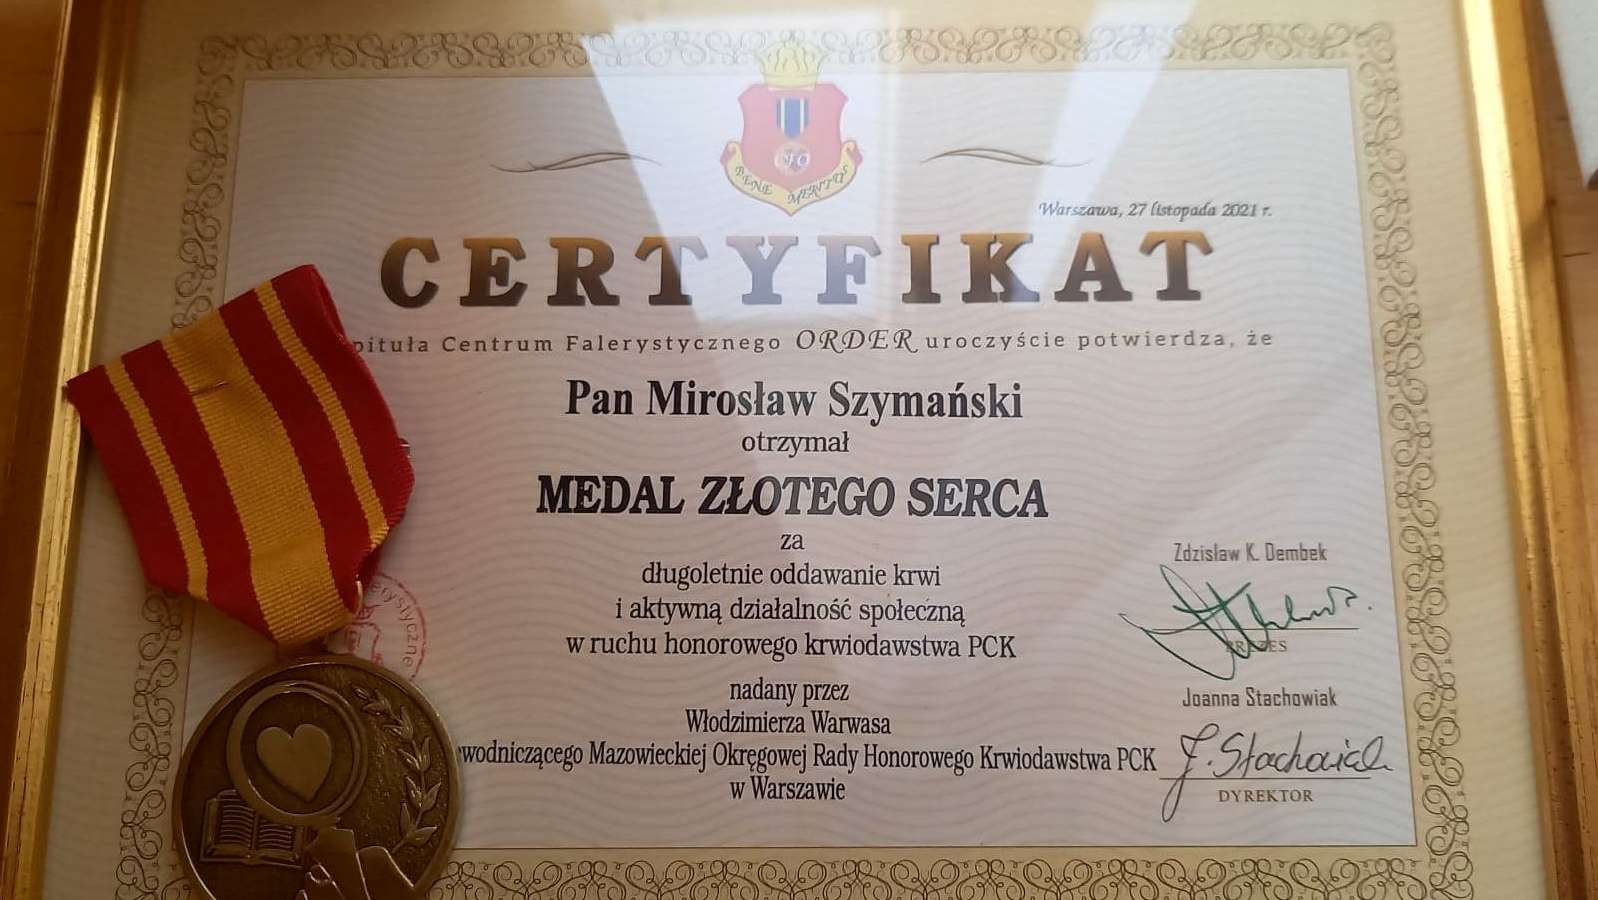 Certyfikat - Medal złotego serca dla Pana Mirosława Szymańskiego